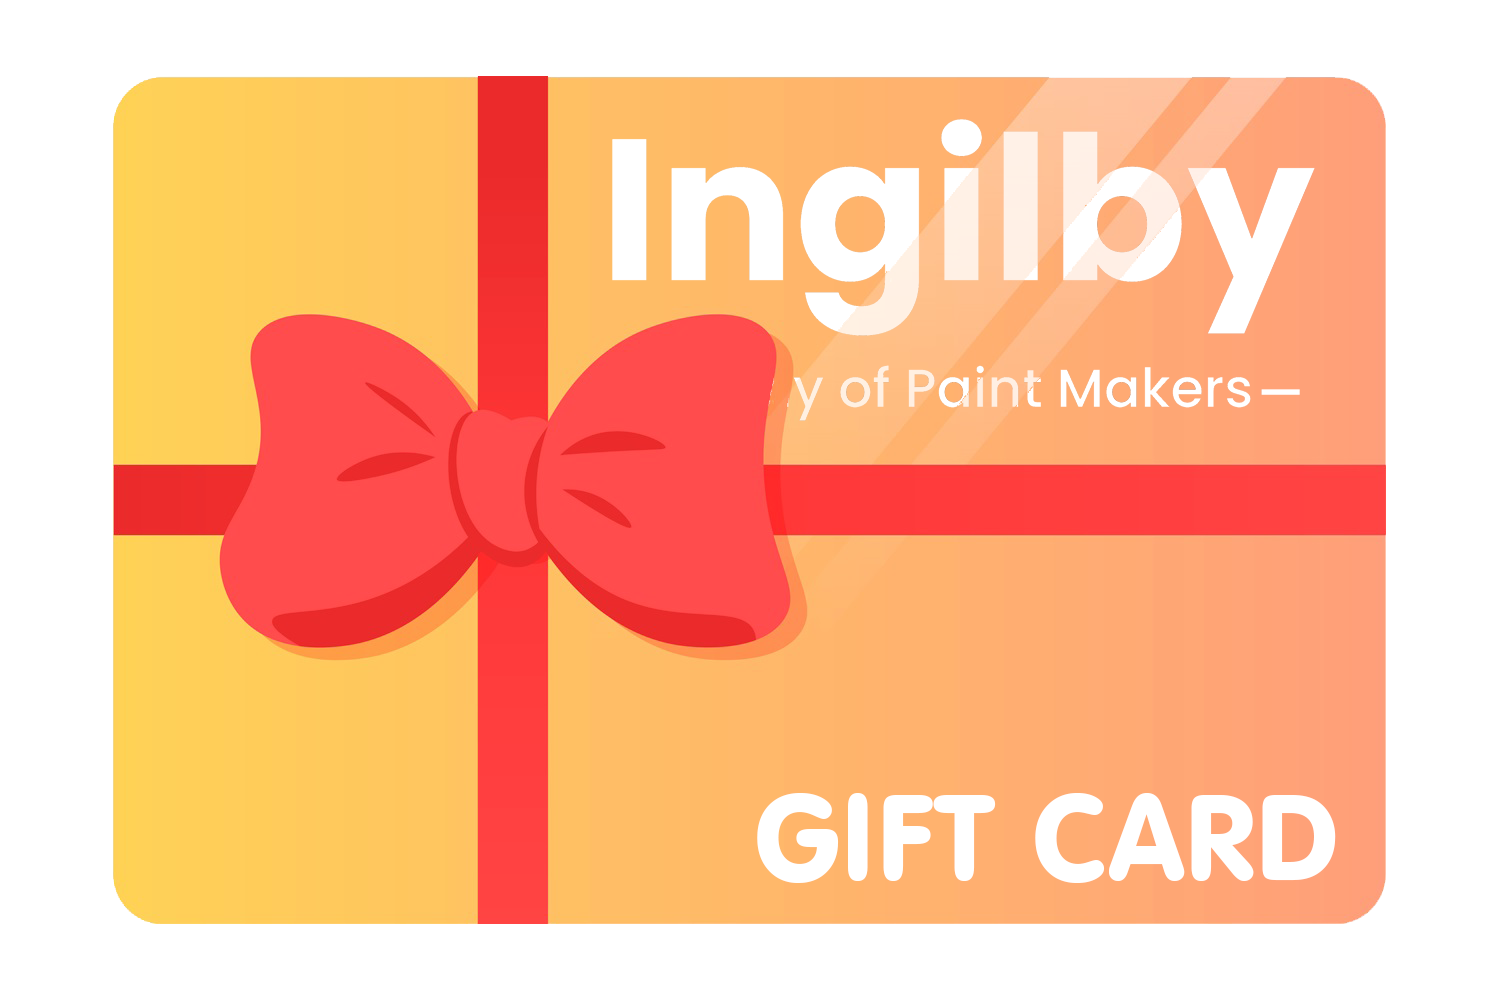 Ingilby Gift Card